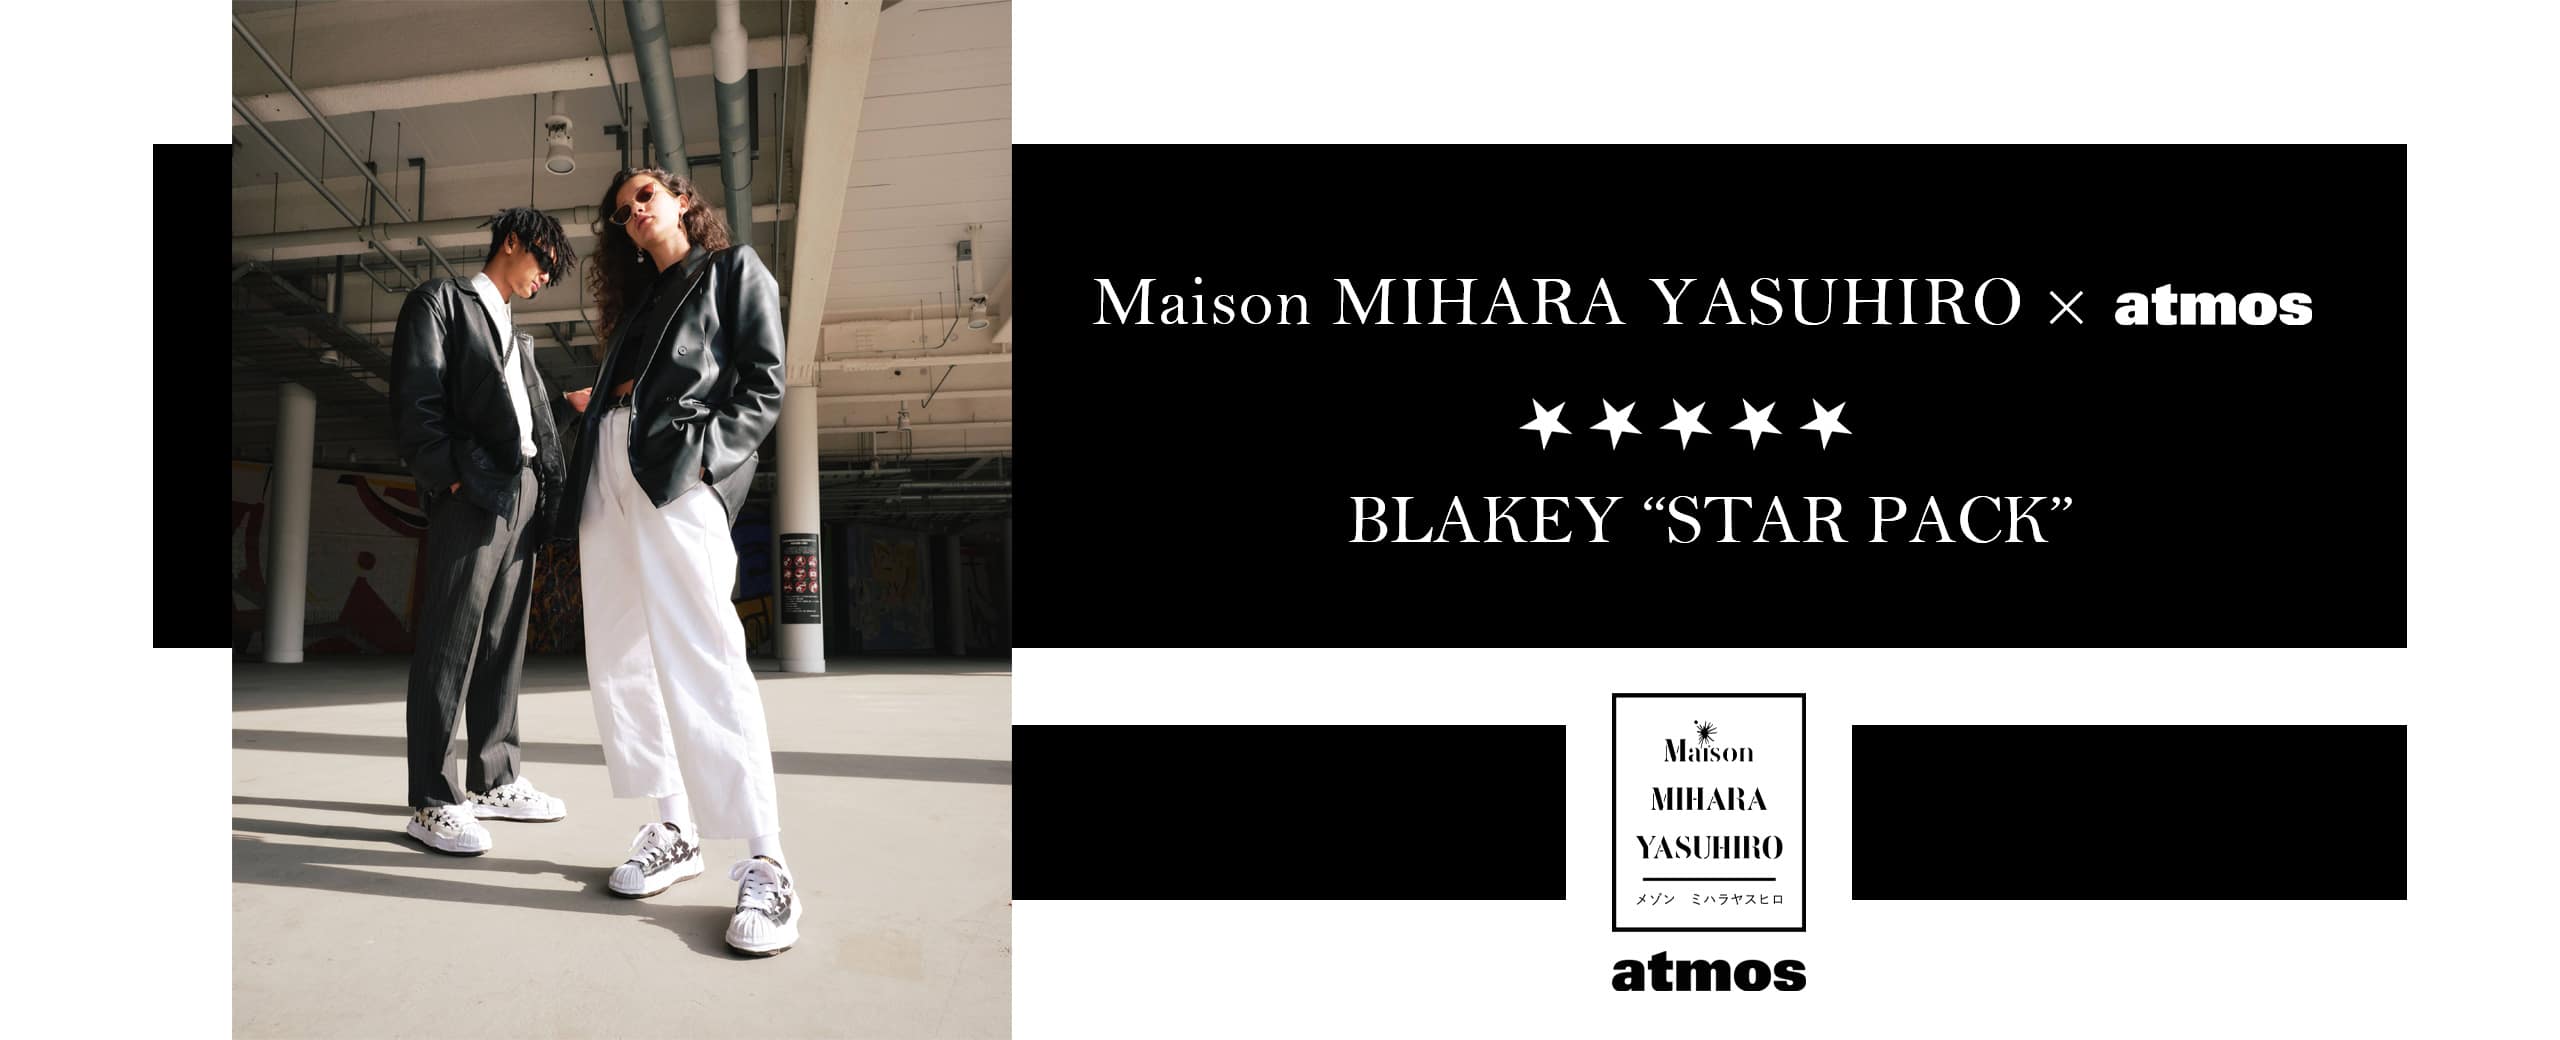 Maison MIHARA YASUHIRO × atmos BLAKEY “STAR PACK”